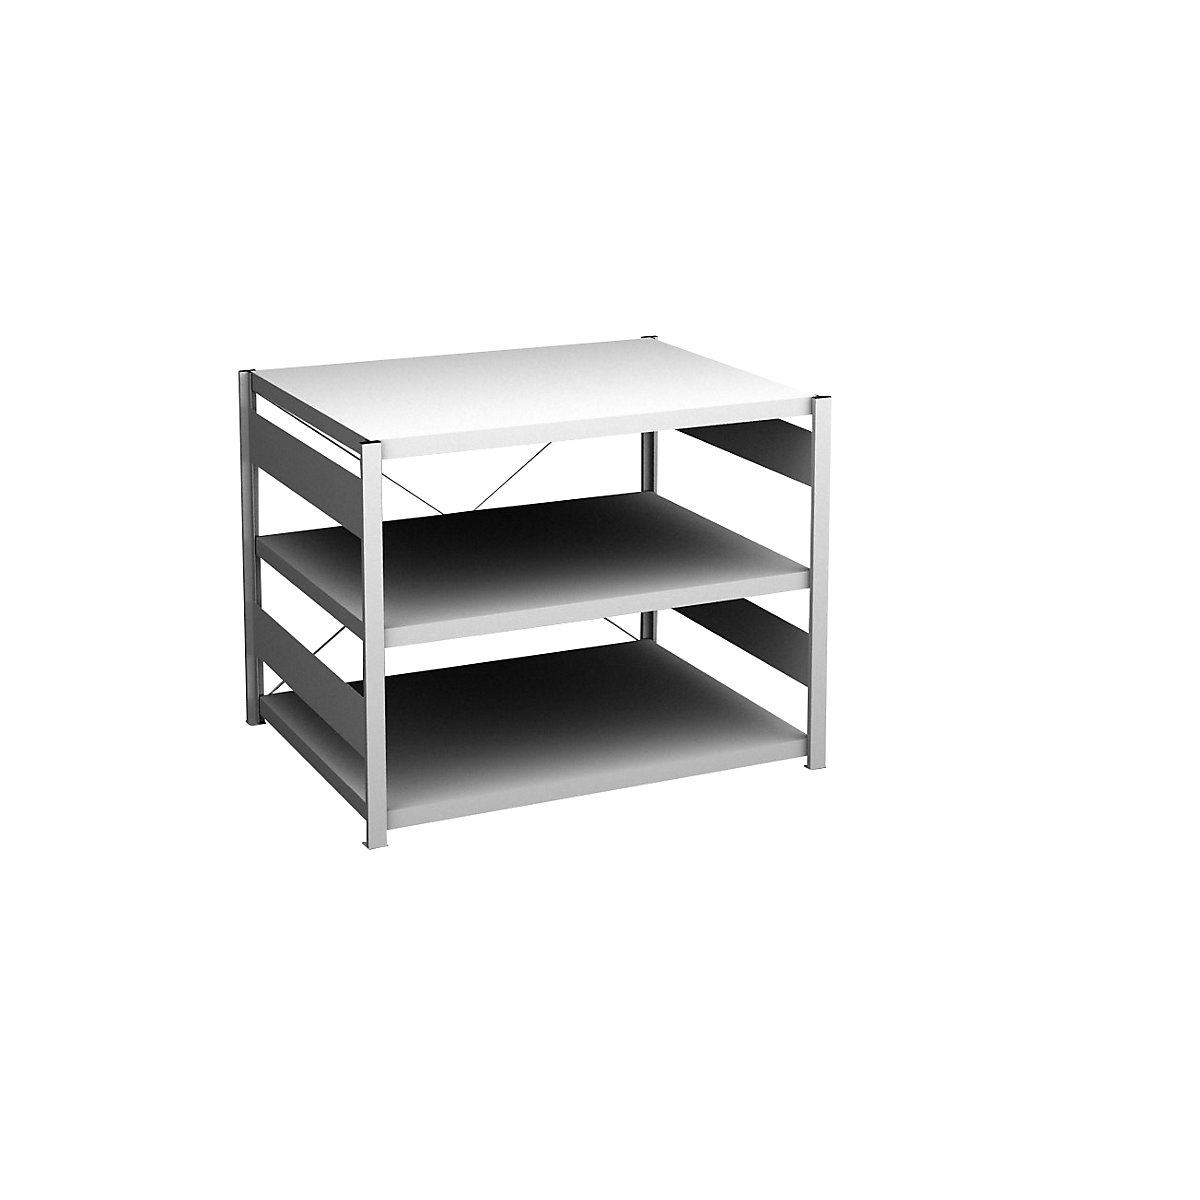 Sideboard shelving unit, light grey – hofe, height 825 mm, 3 shelves, standard shelf unit, shelf depth 800 mm, max. shelf load 130 kg-3